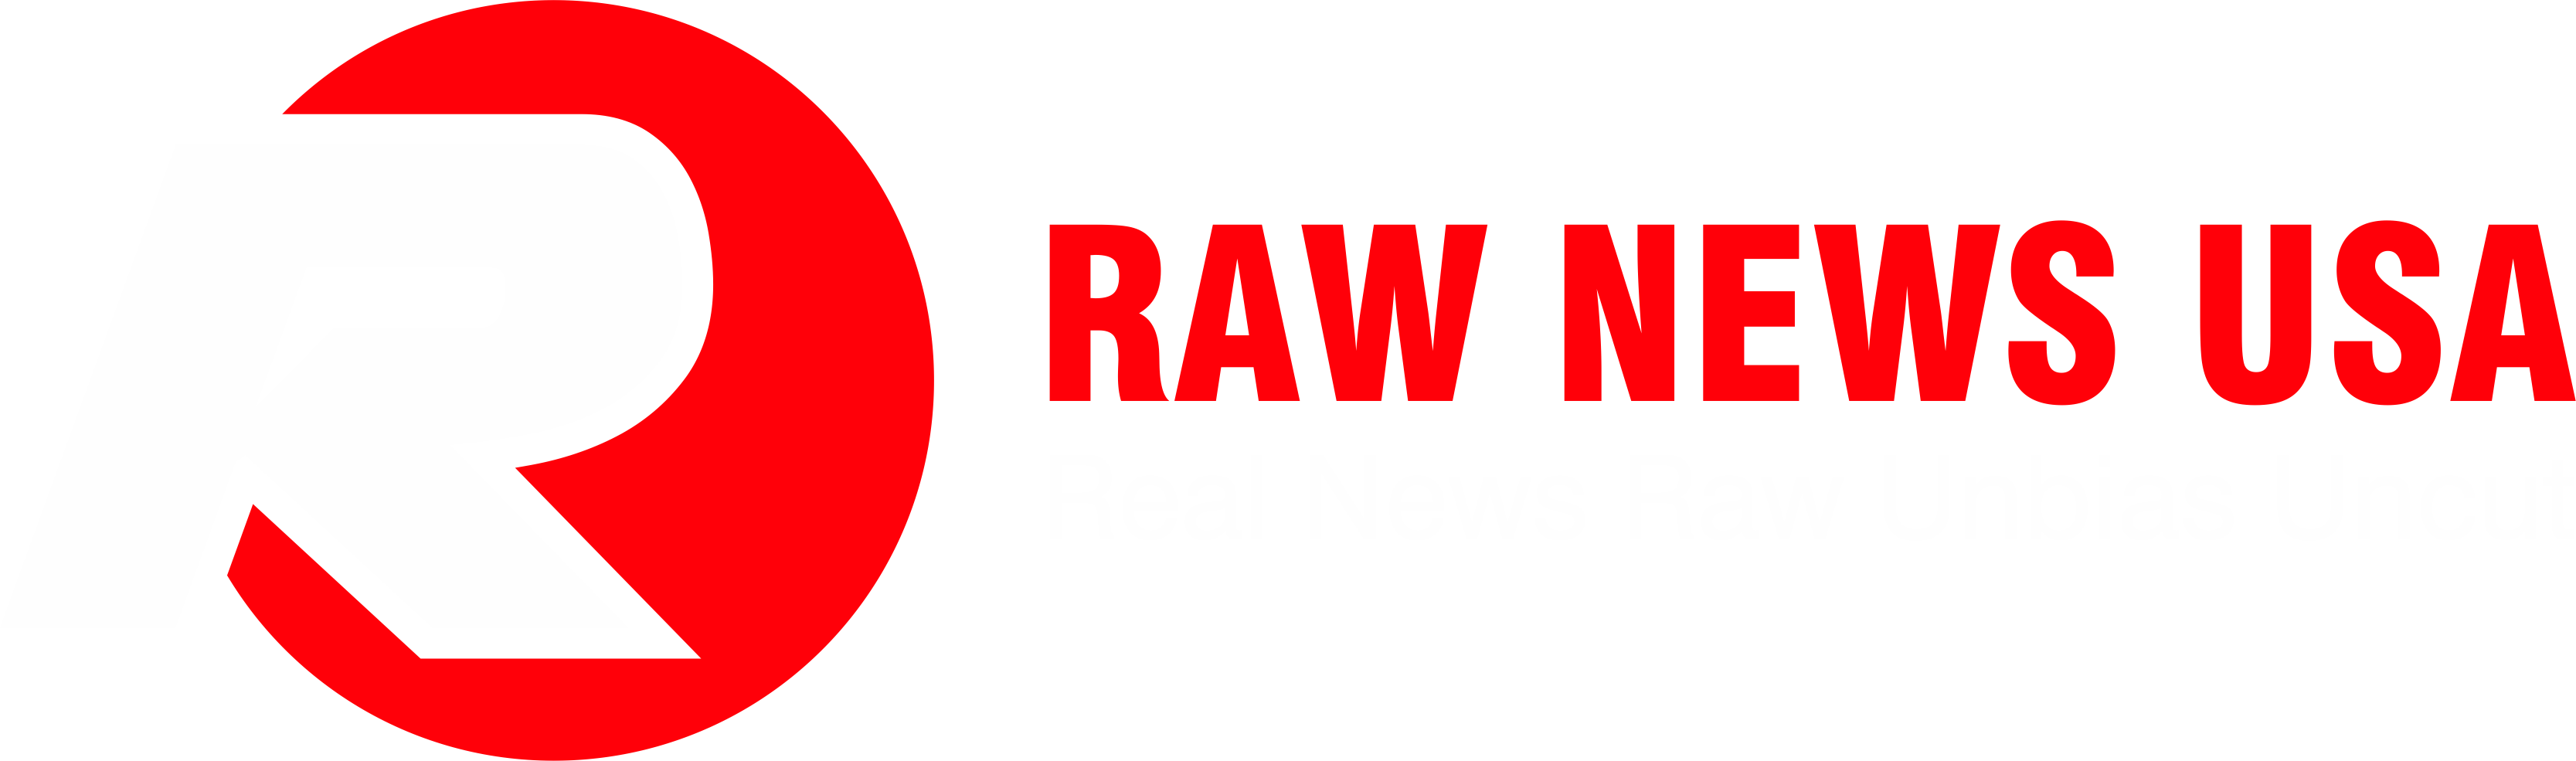 Raw News USA